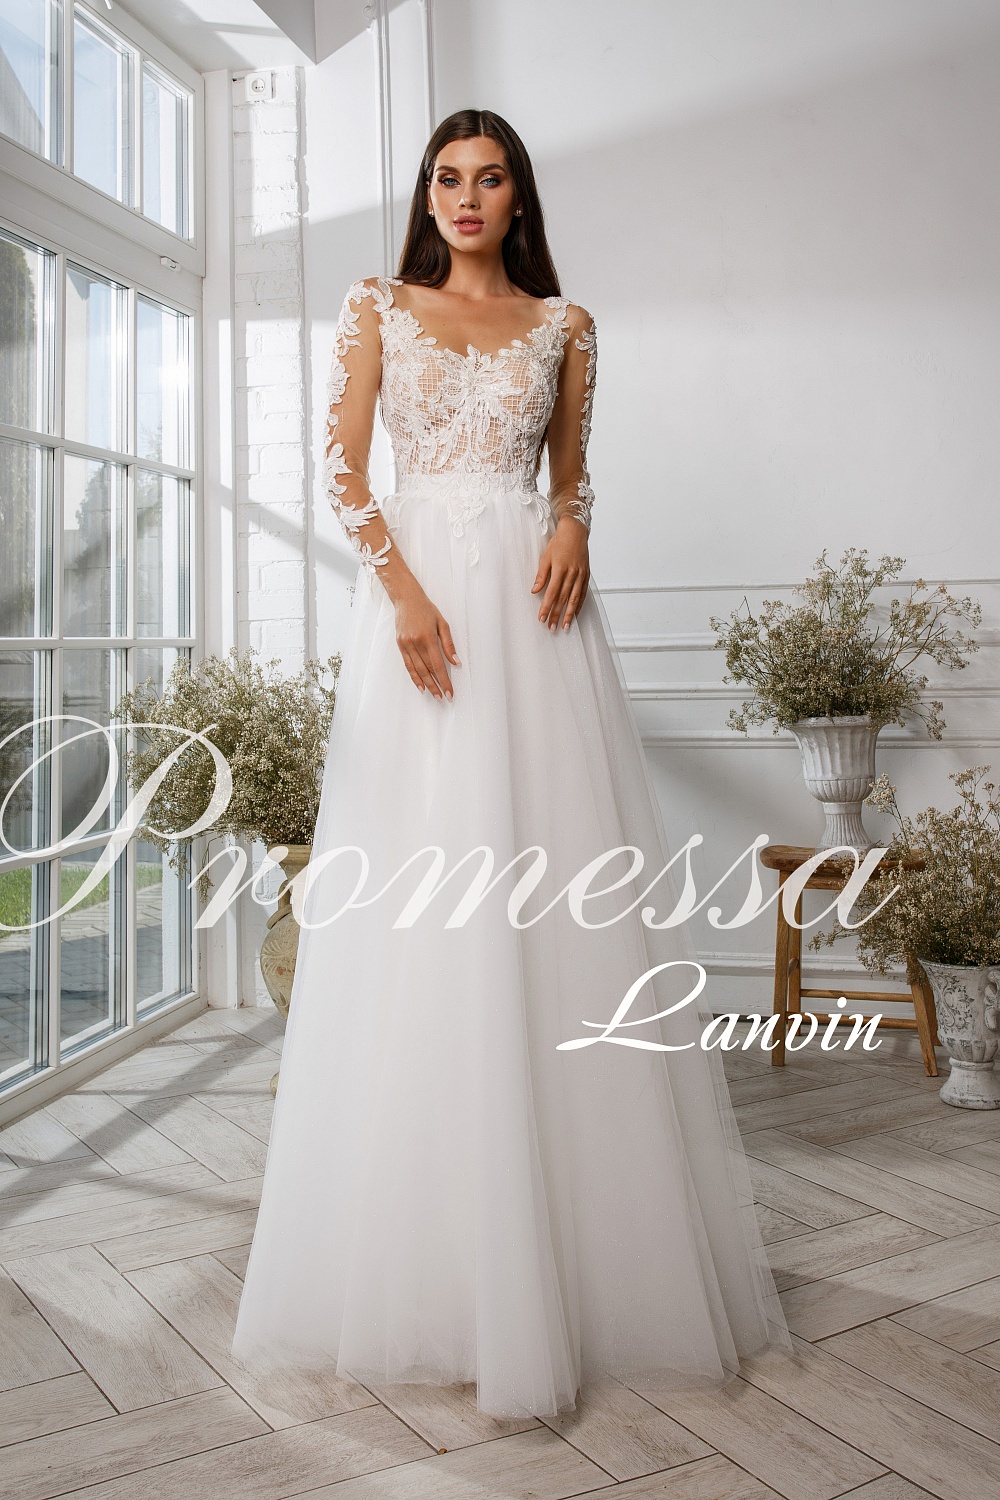 Свадебное платье Ланвин от Promessa